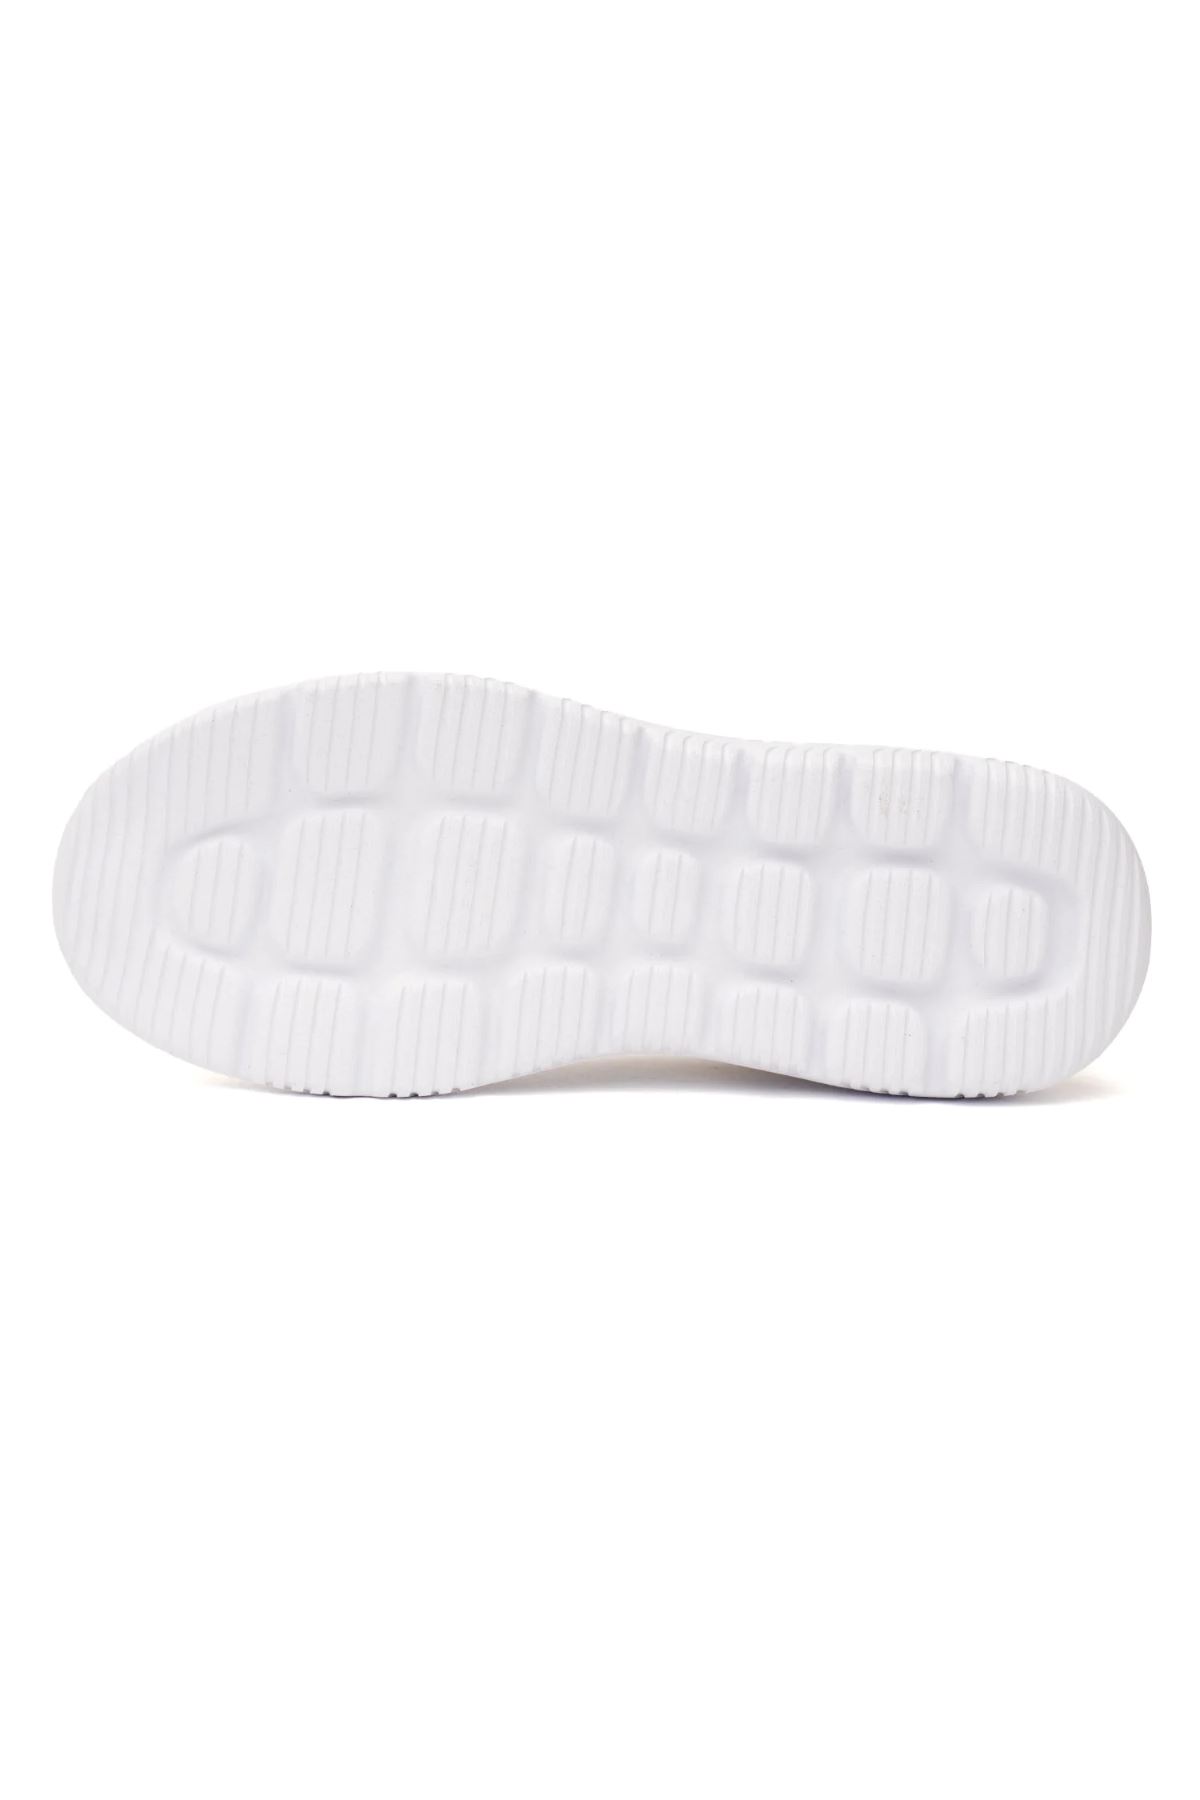 Hummel Hml Tyro Kadın Beyaz Spor Ayakkabı - 900491-9001